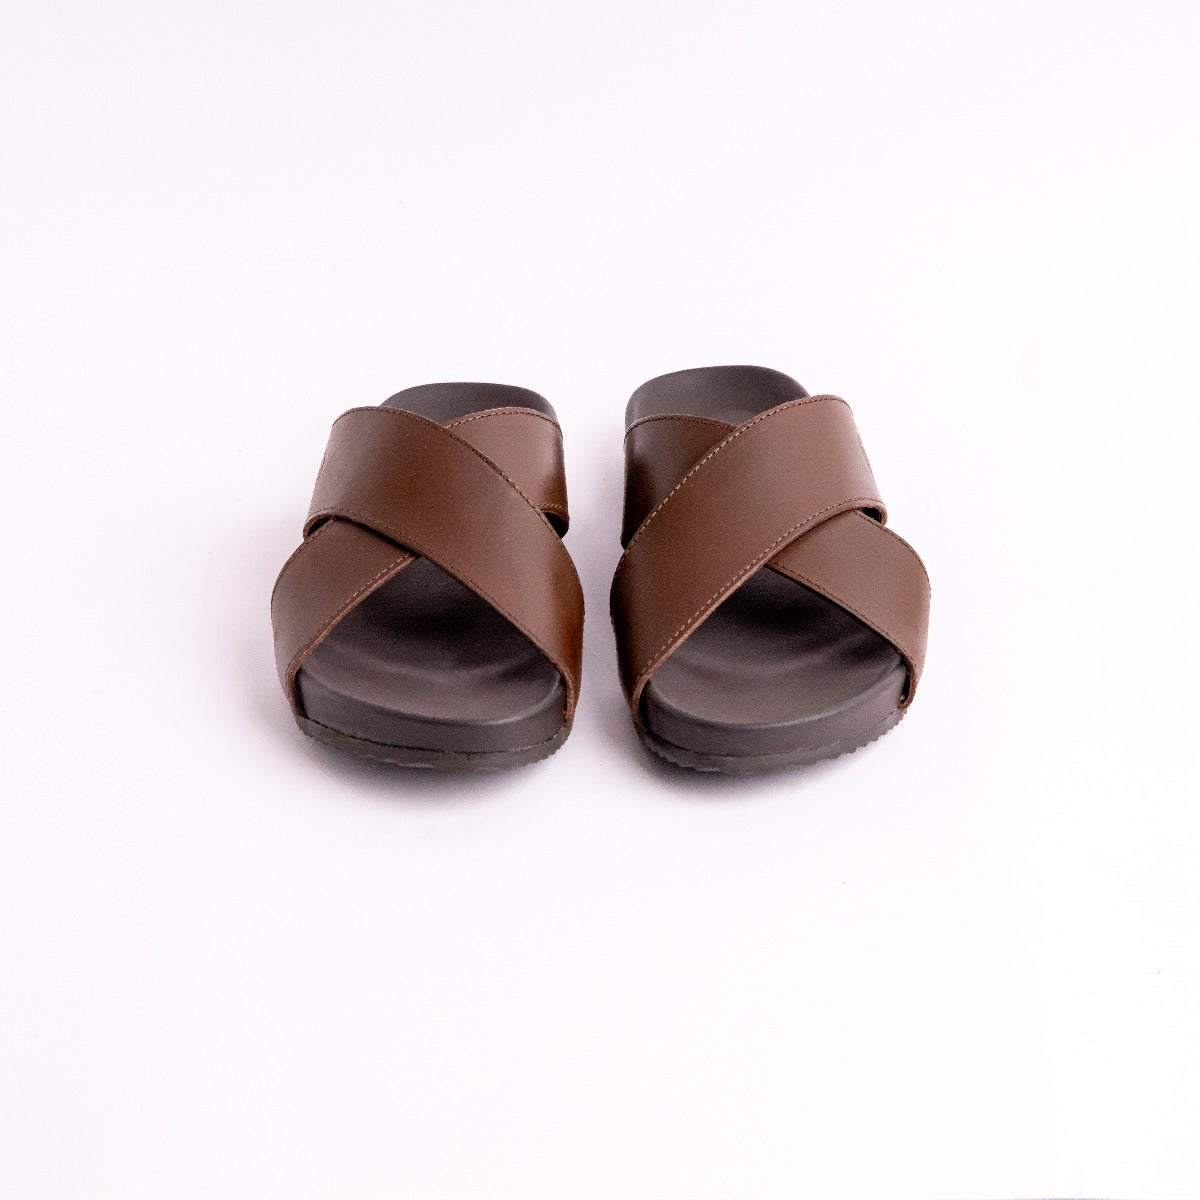 Buy Perf Croc Embossed Leather Toe Post Sandals Online | SKU:  228-249-20-3-Metro Shoes